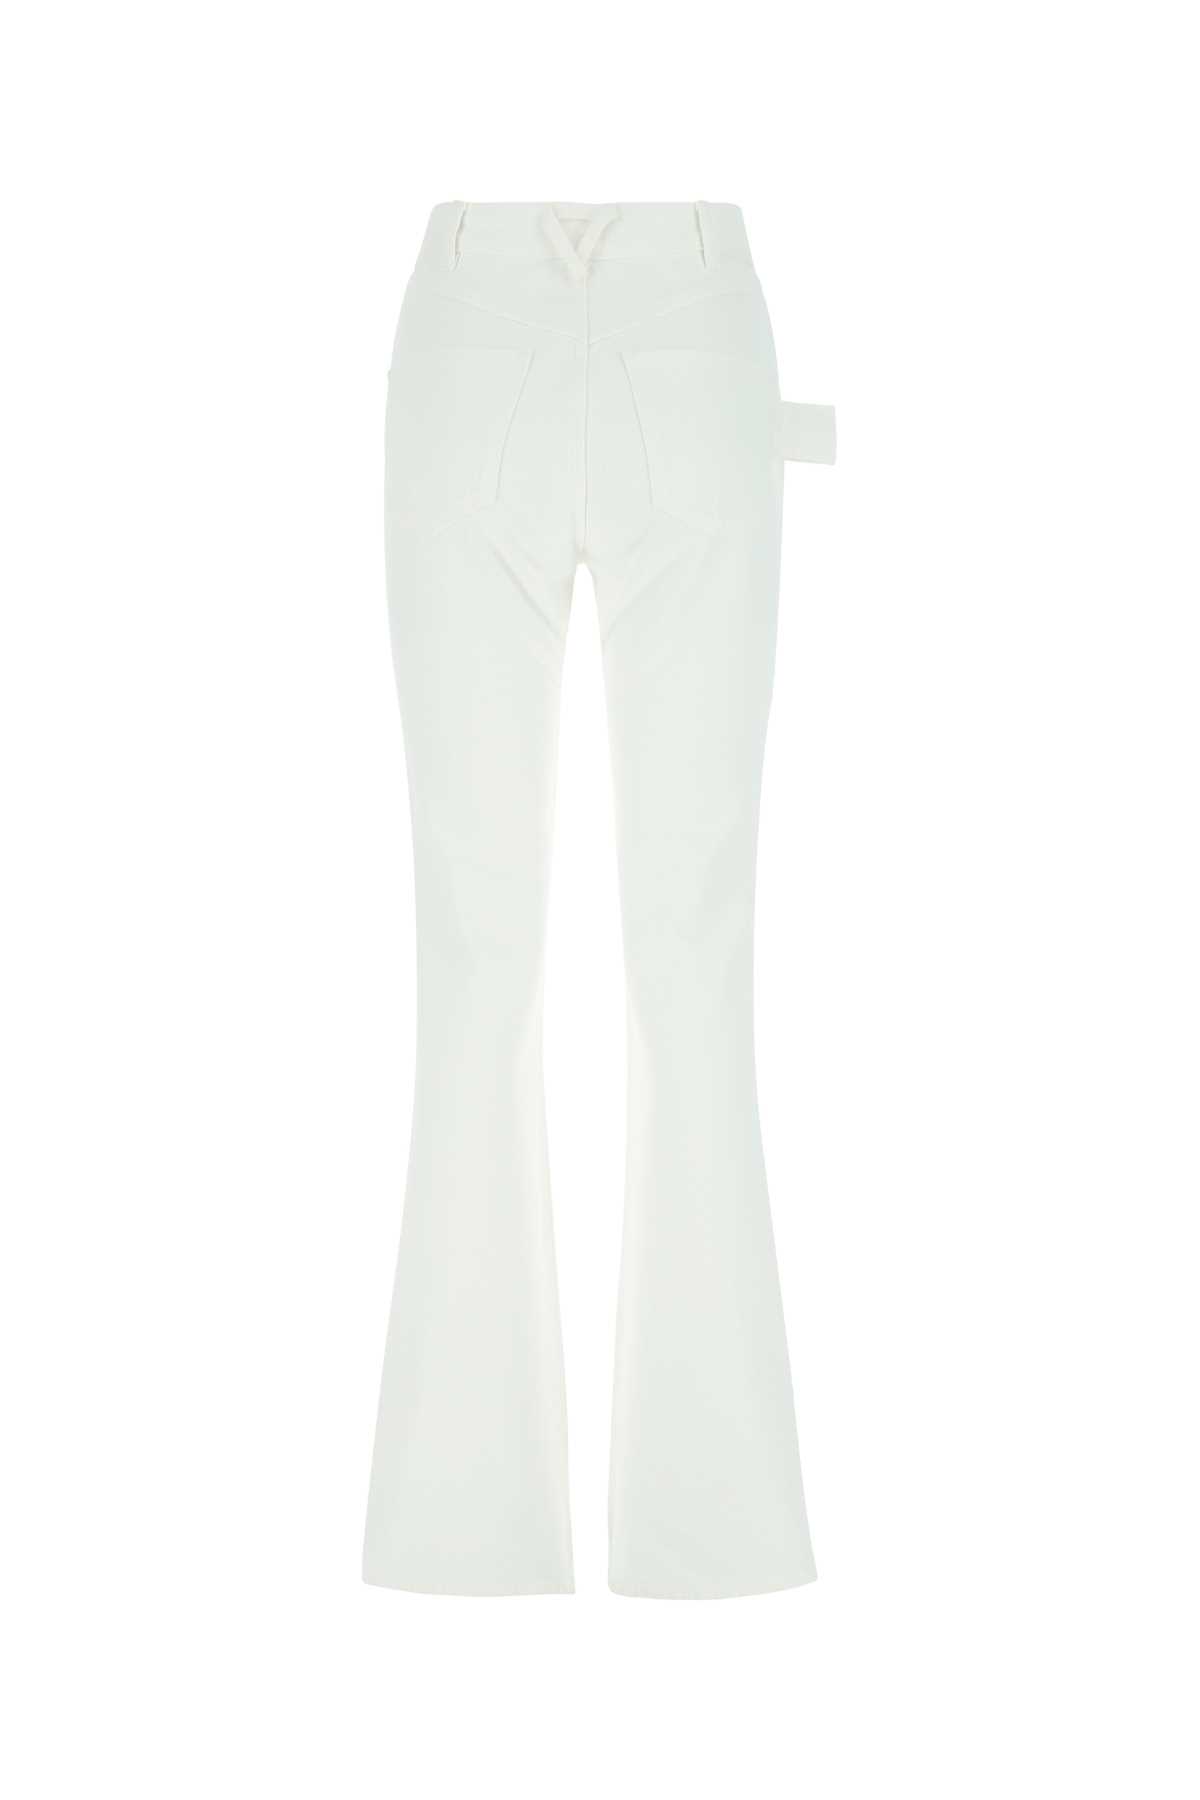 Bottega Veneta White Denim Jeans In 9000